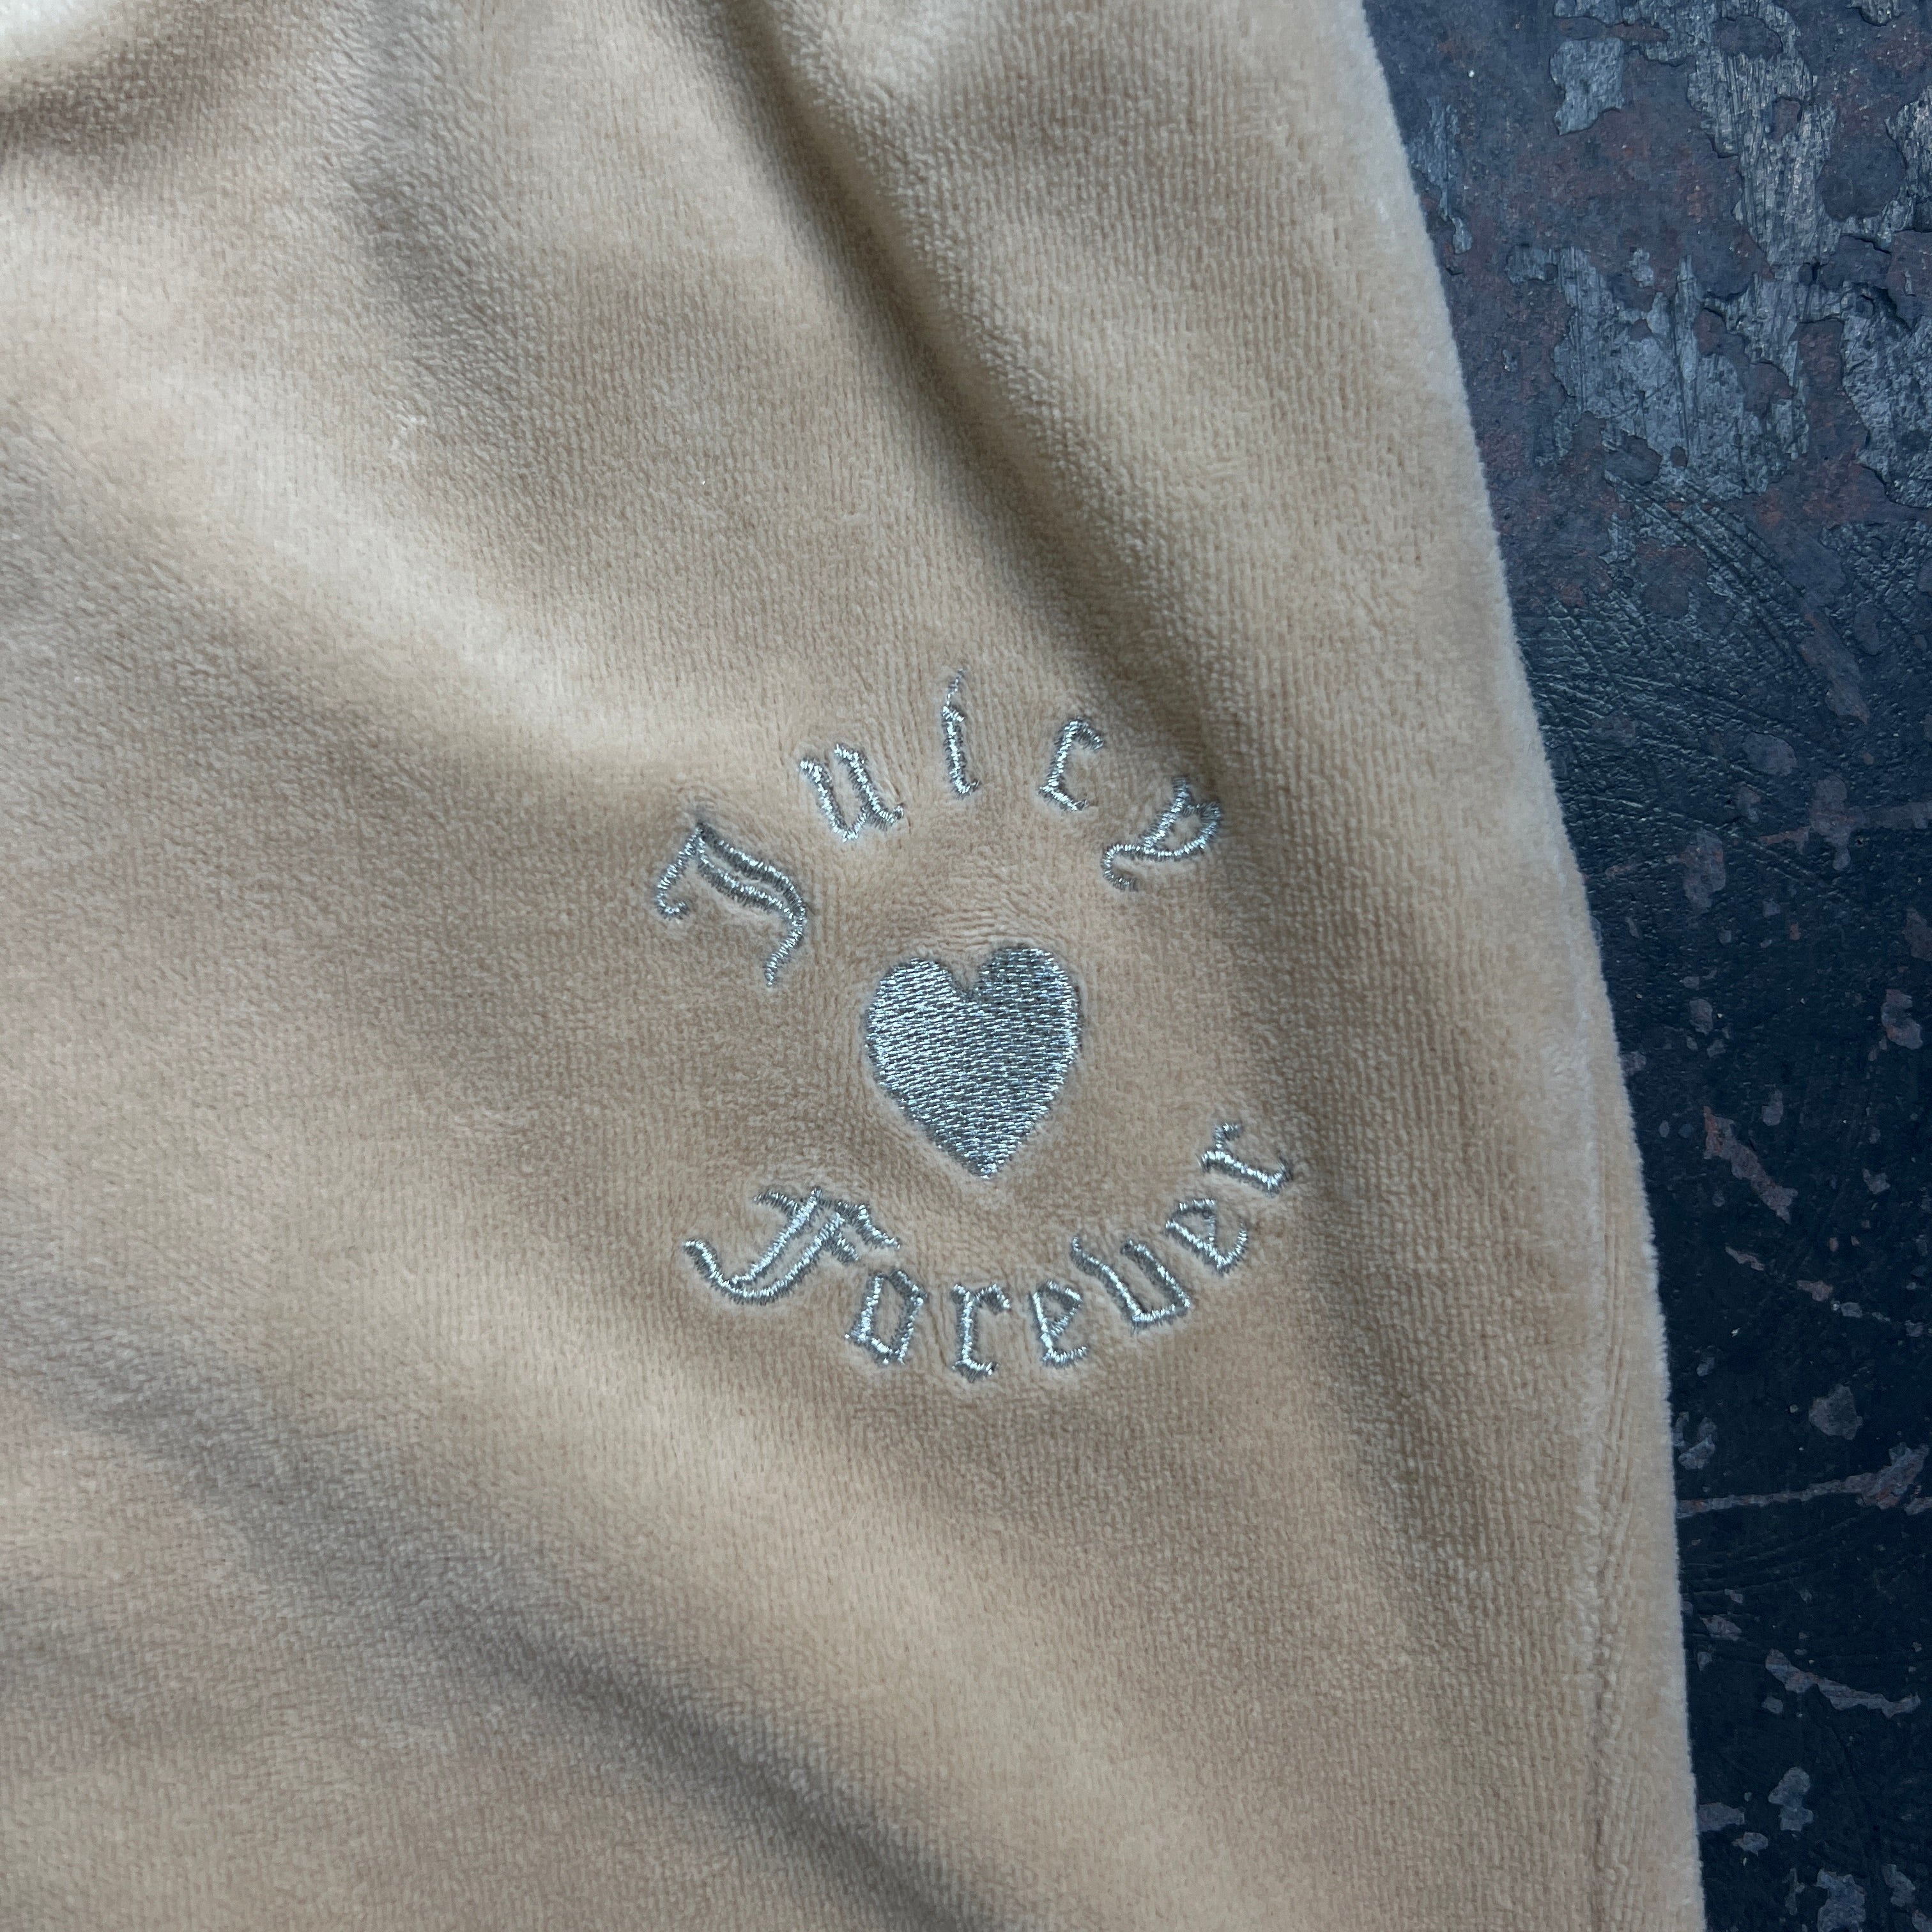 Juicy Couture Khaki Velour Pants Size S